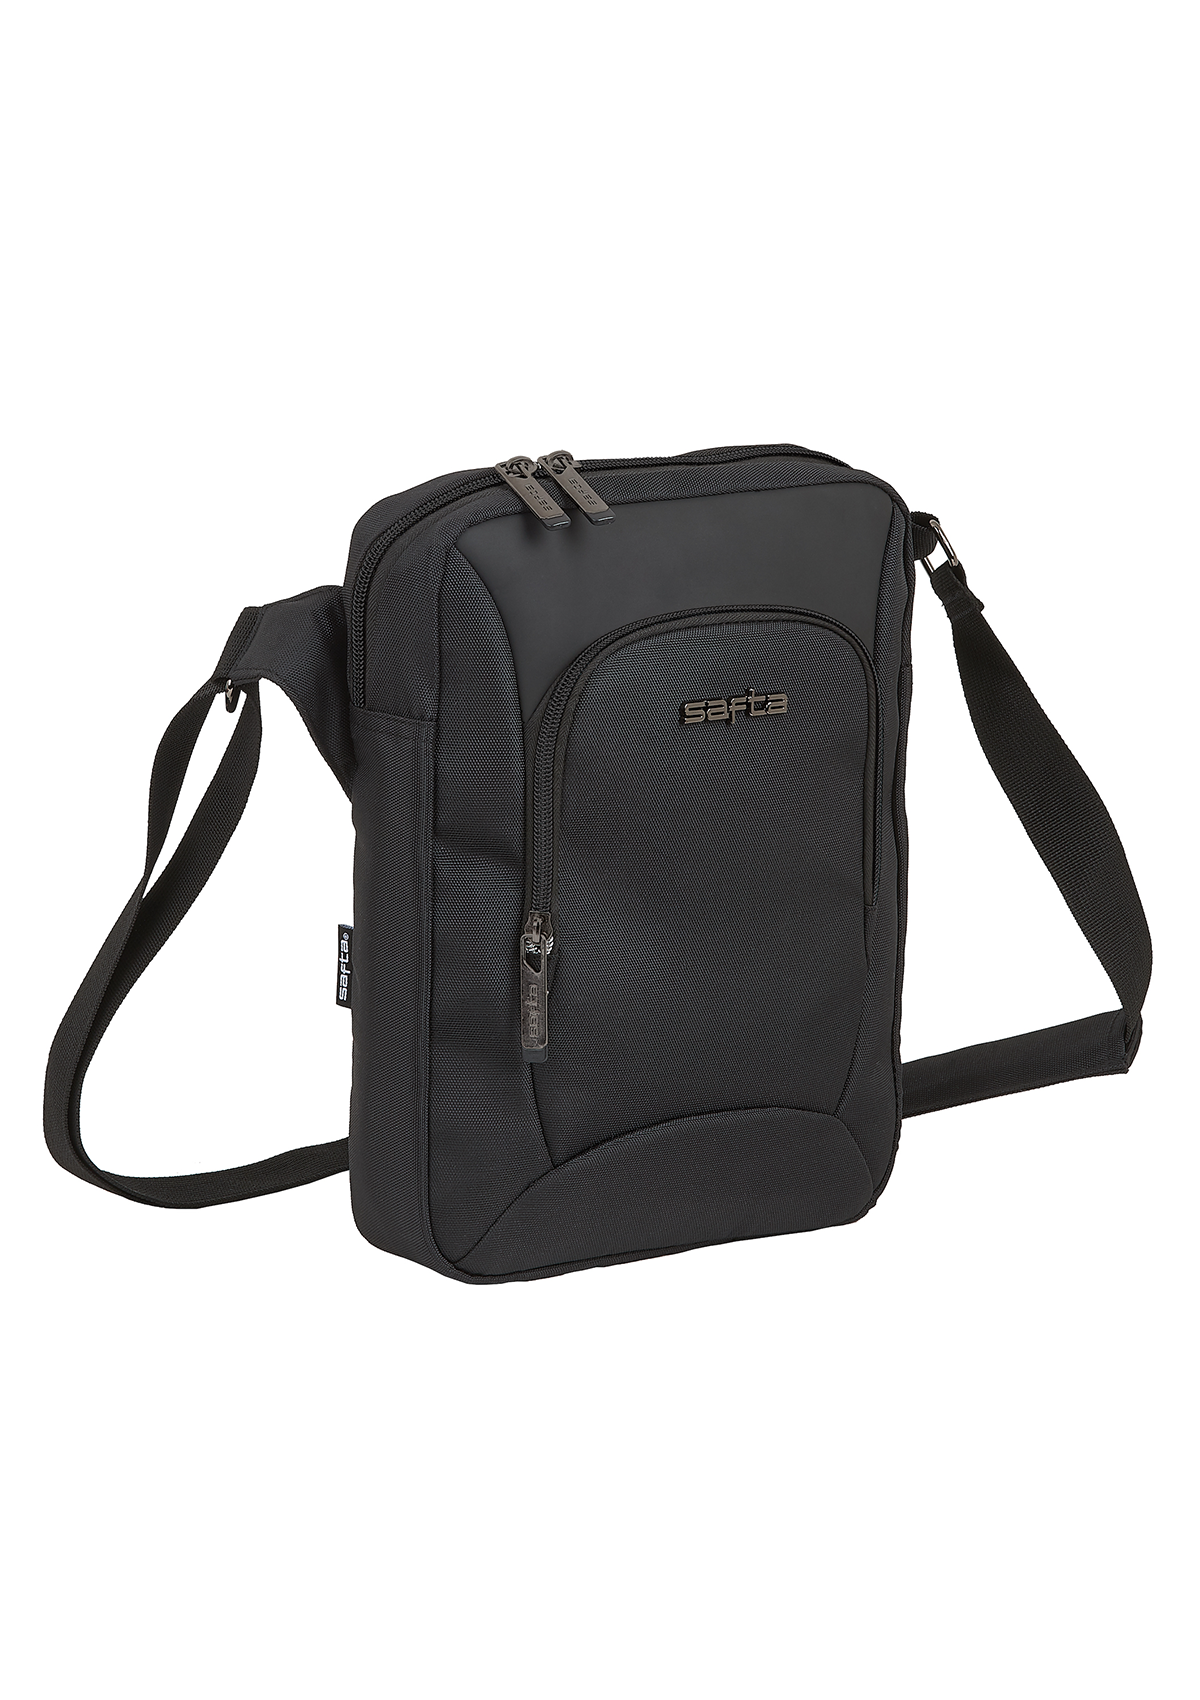 Safta Business Shoulder Laptop Bag 10.6"